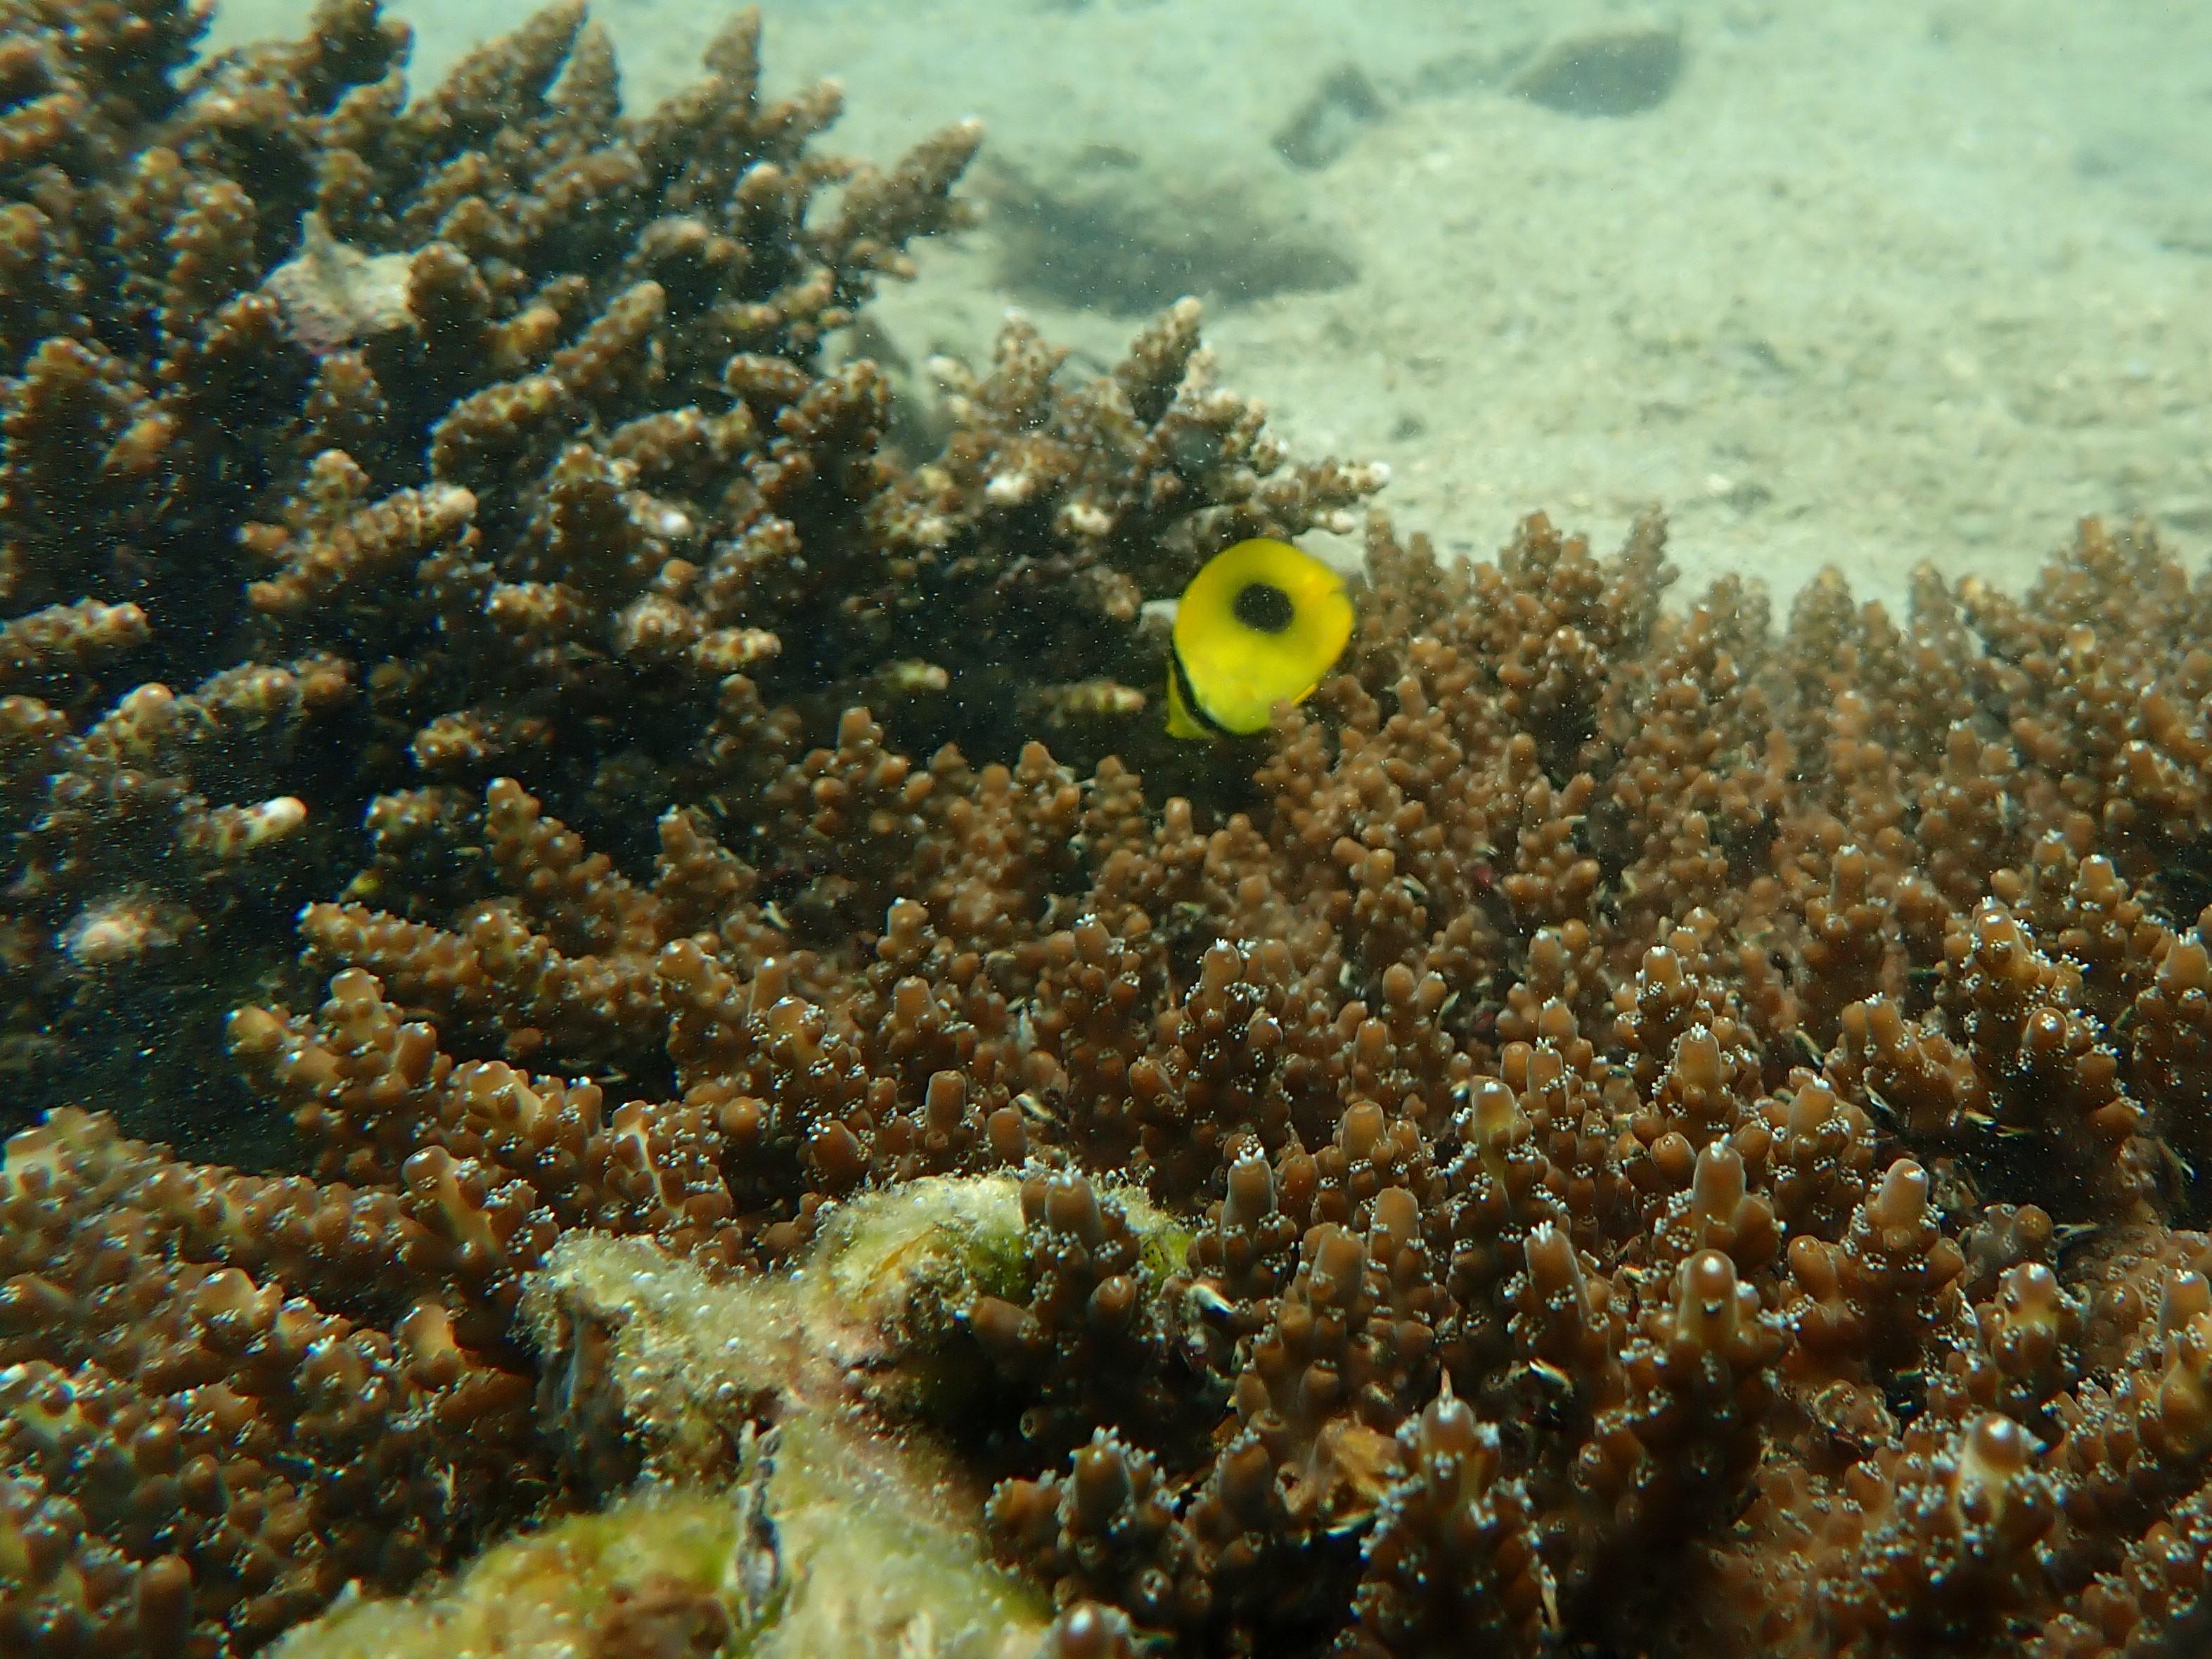 漁農自然護理署今日（十二月十日）公布今年的香港珊瑚礁普查結果，整體珊瑚健康狀況良好，物種多樣性維持於高水平。圖示攝於海下灣的蝴蝶魚及鹿角珊瑚。

